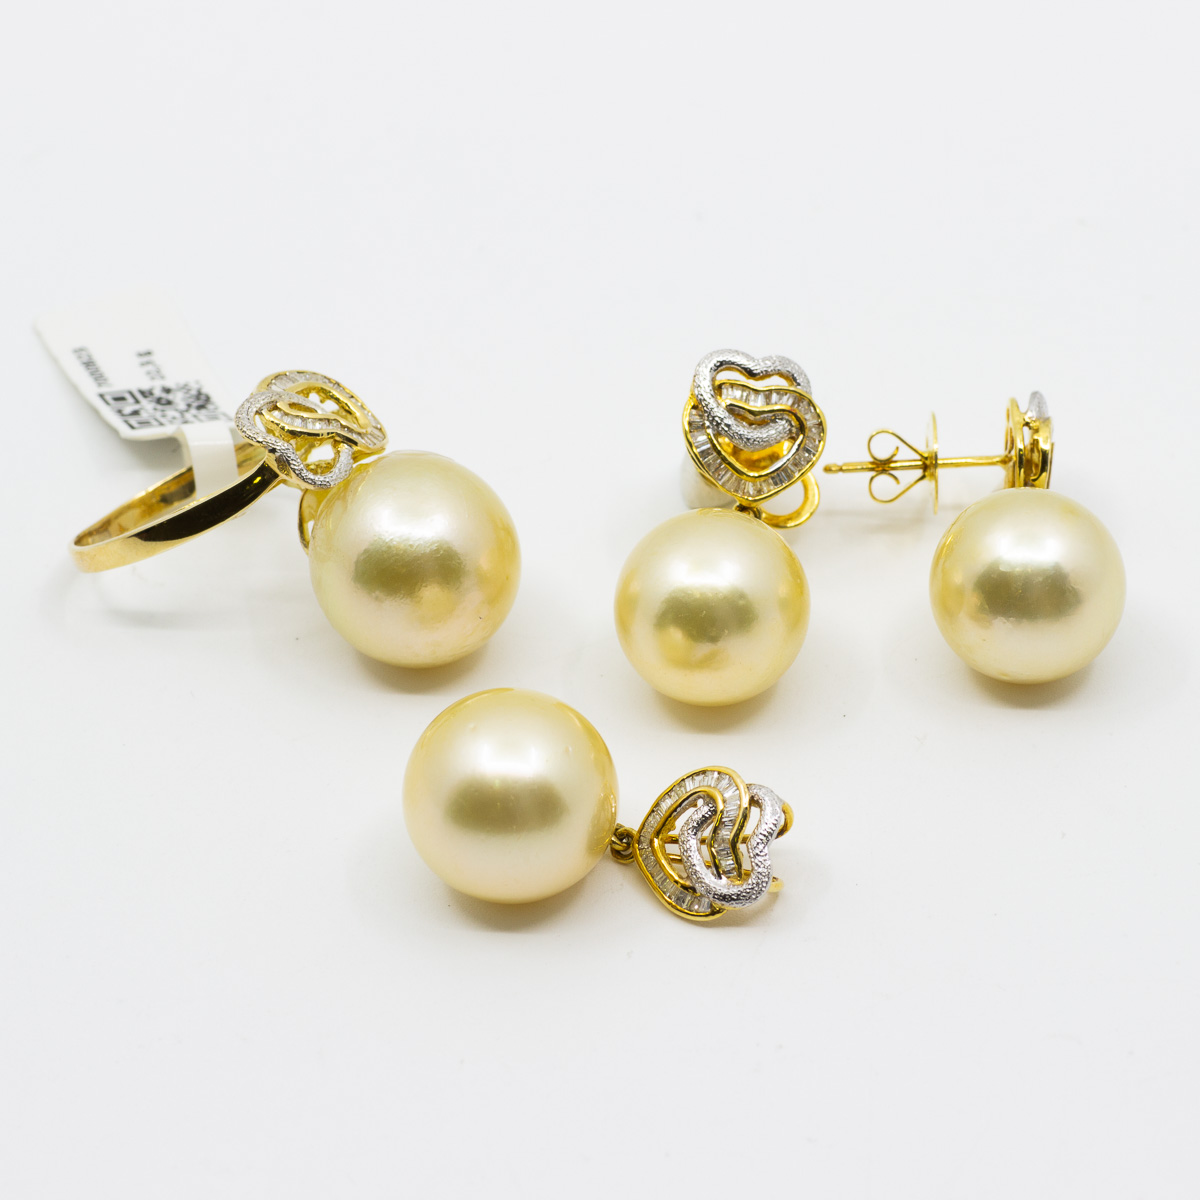 1 Schmuckset 585/- Gelbgold  mit Perlen und Diamanten, Ring gr: 52, Ohrringe und Anhänger 28 x 13,5